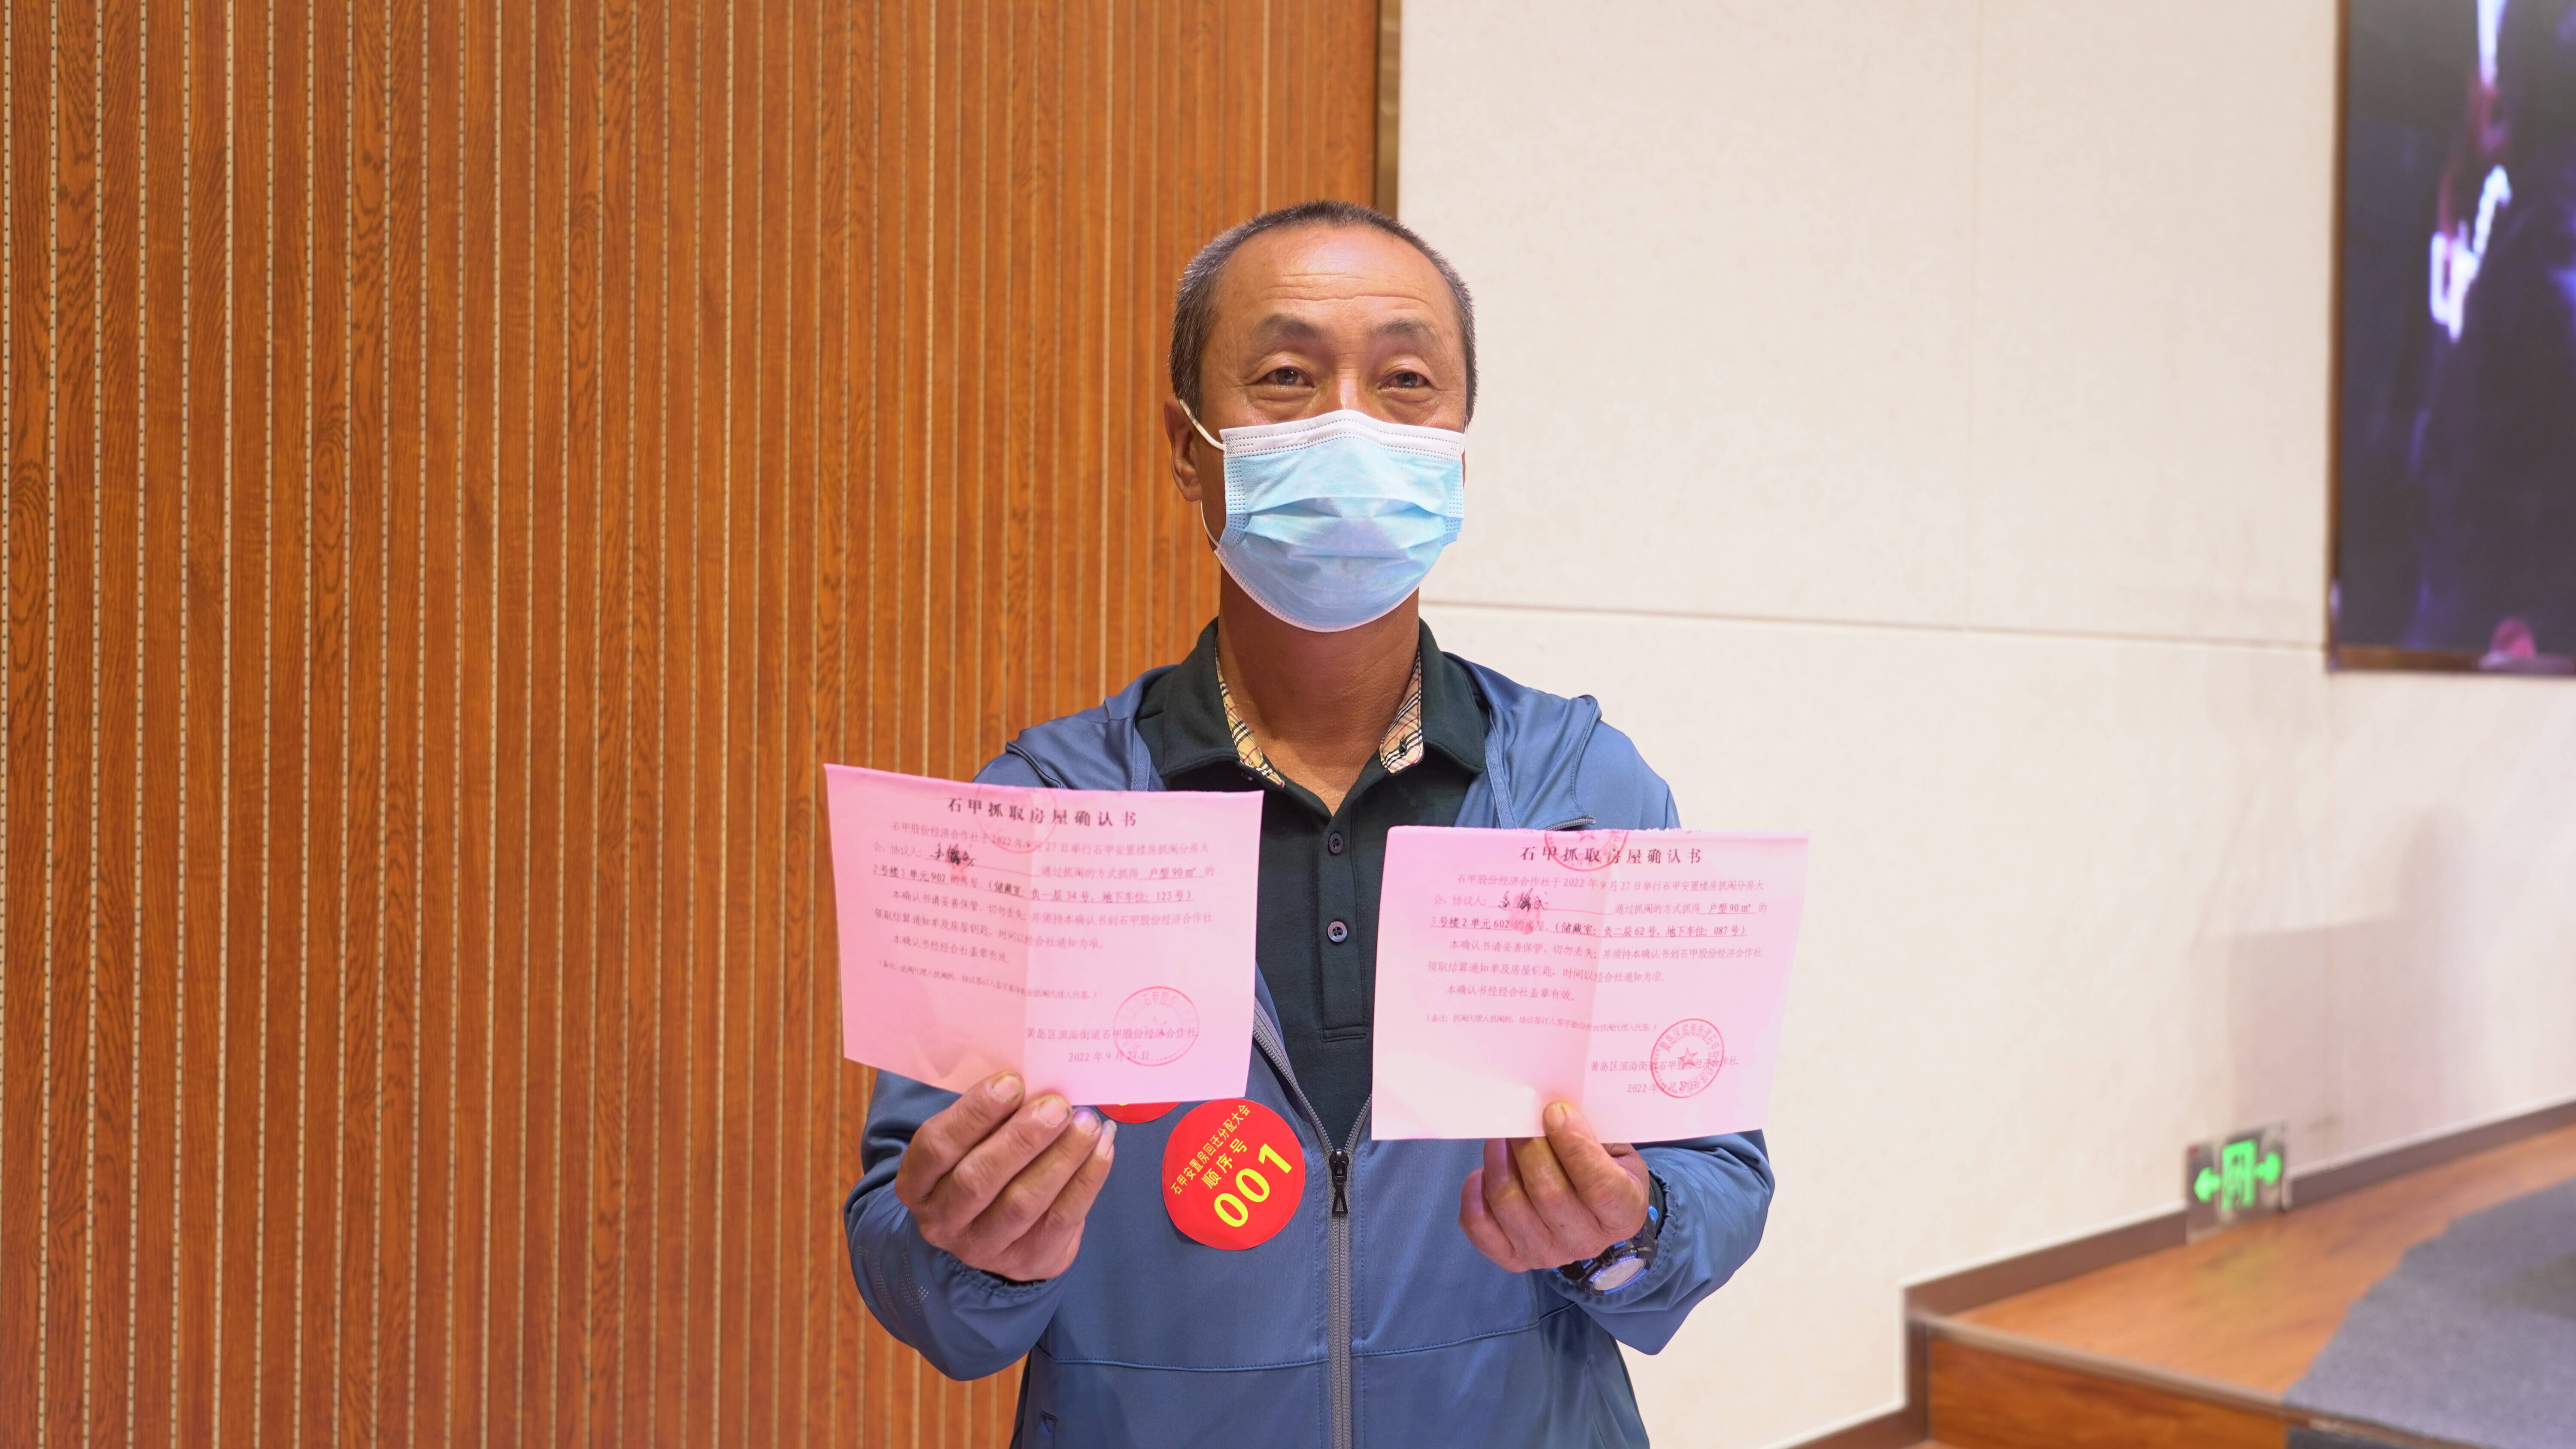 逄锦成抓到满意的房子后向记者展示抓取房屋确认书。